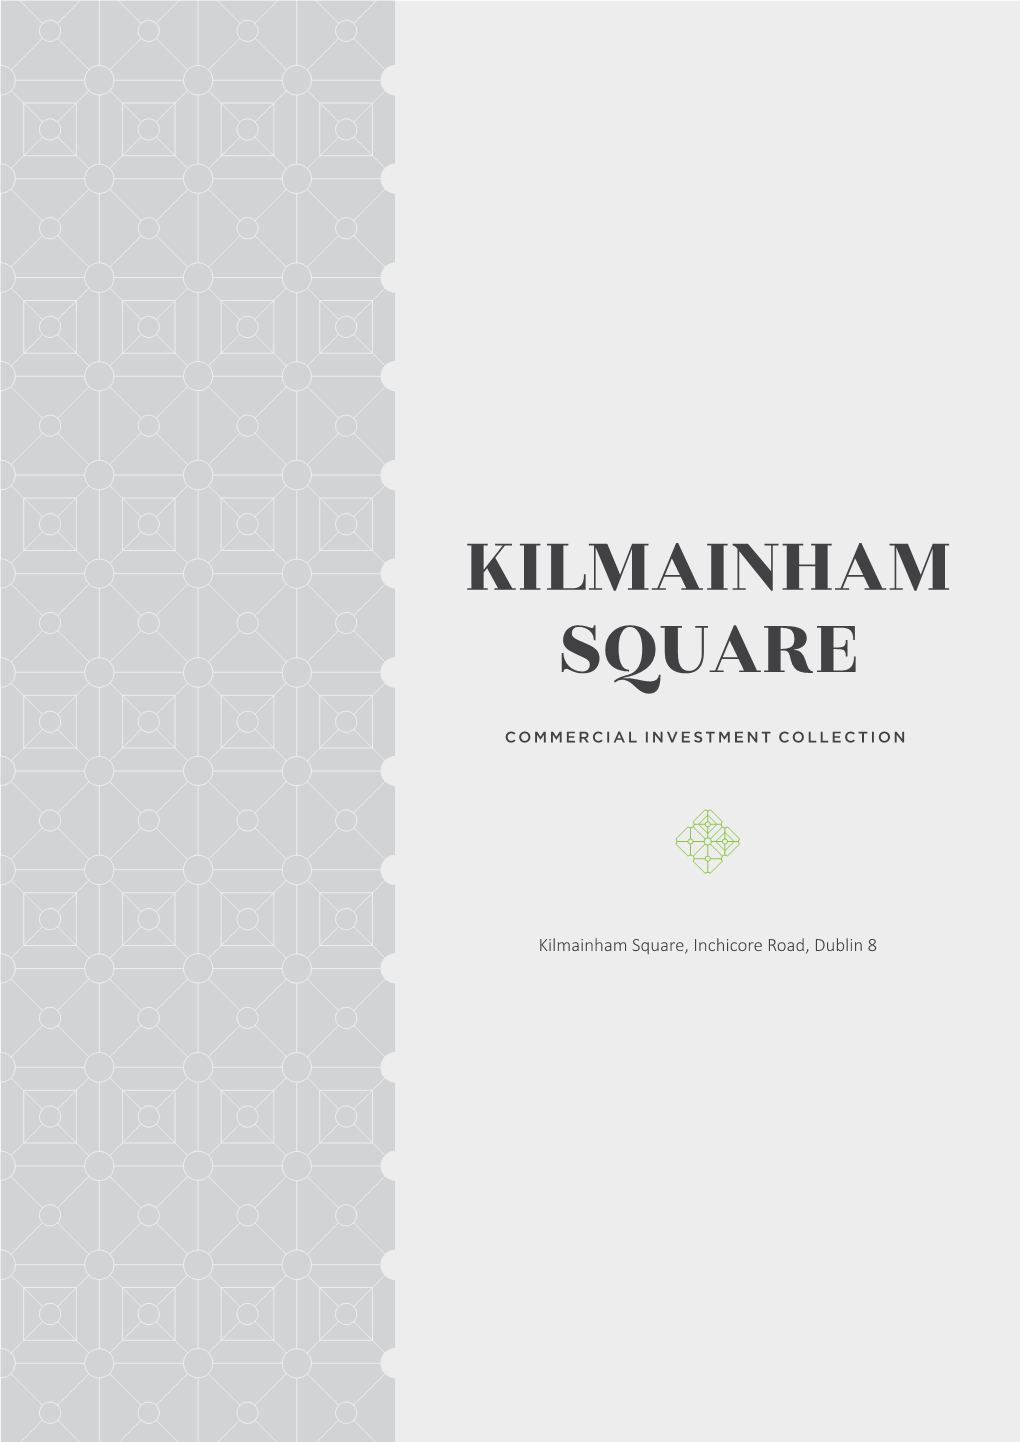 Kilmainham Square